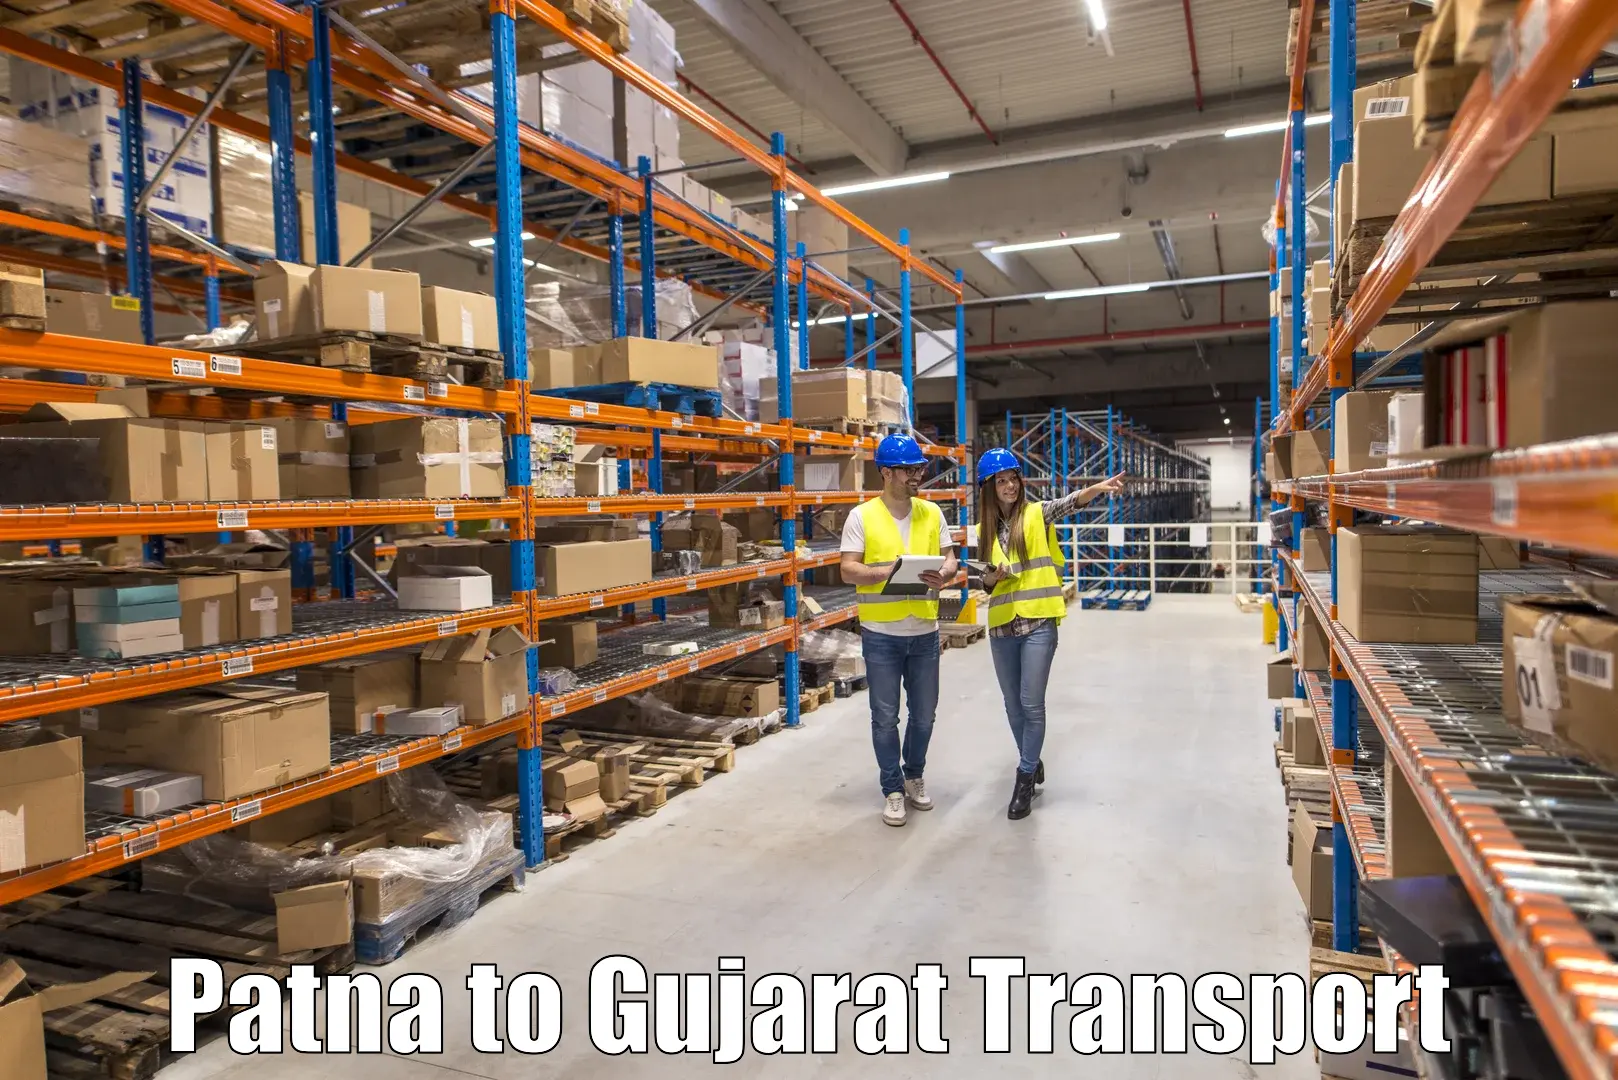 Daily transport service Patna to Gujarat